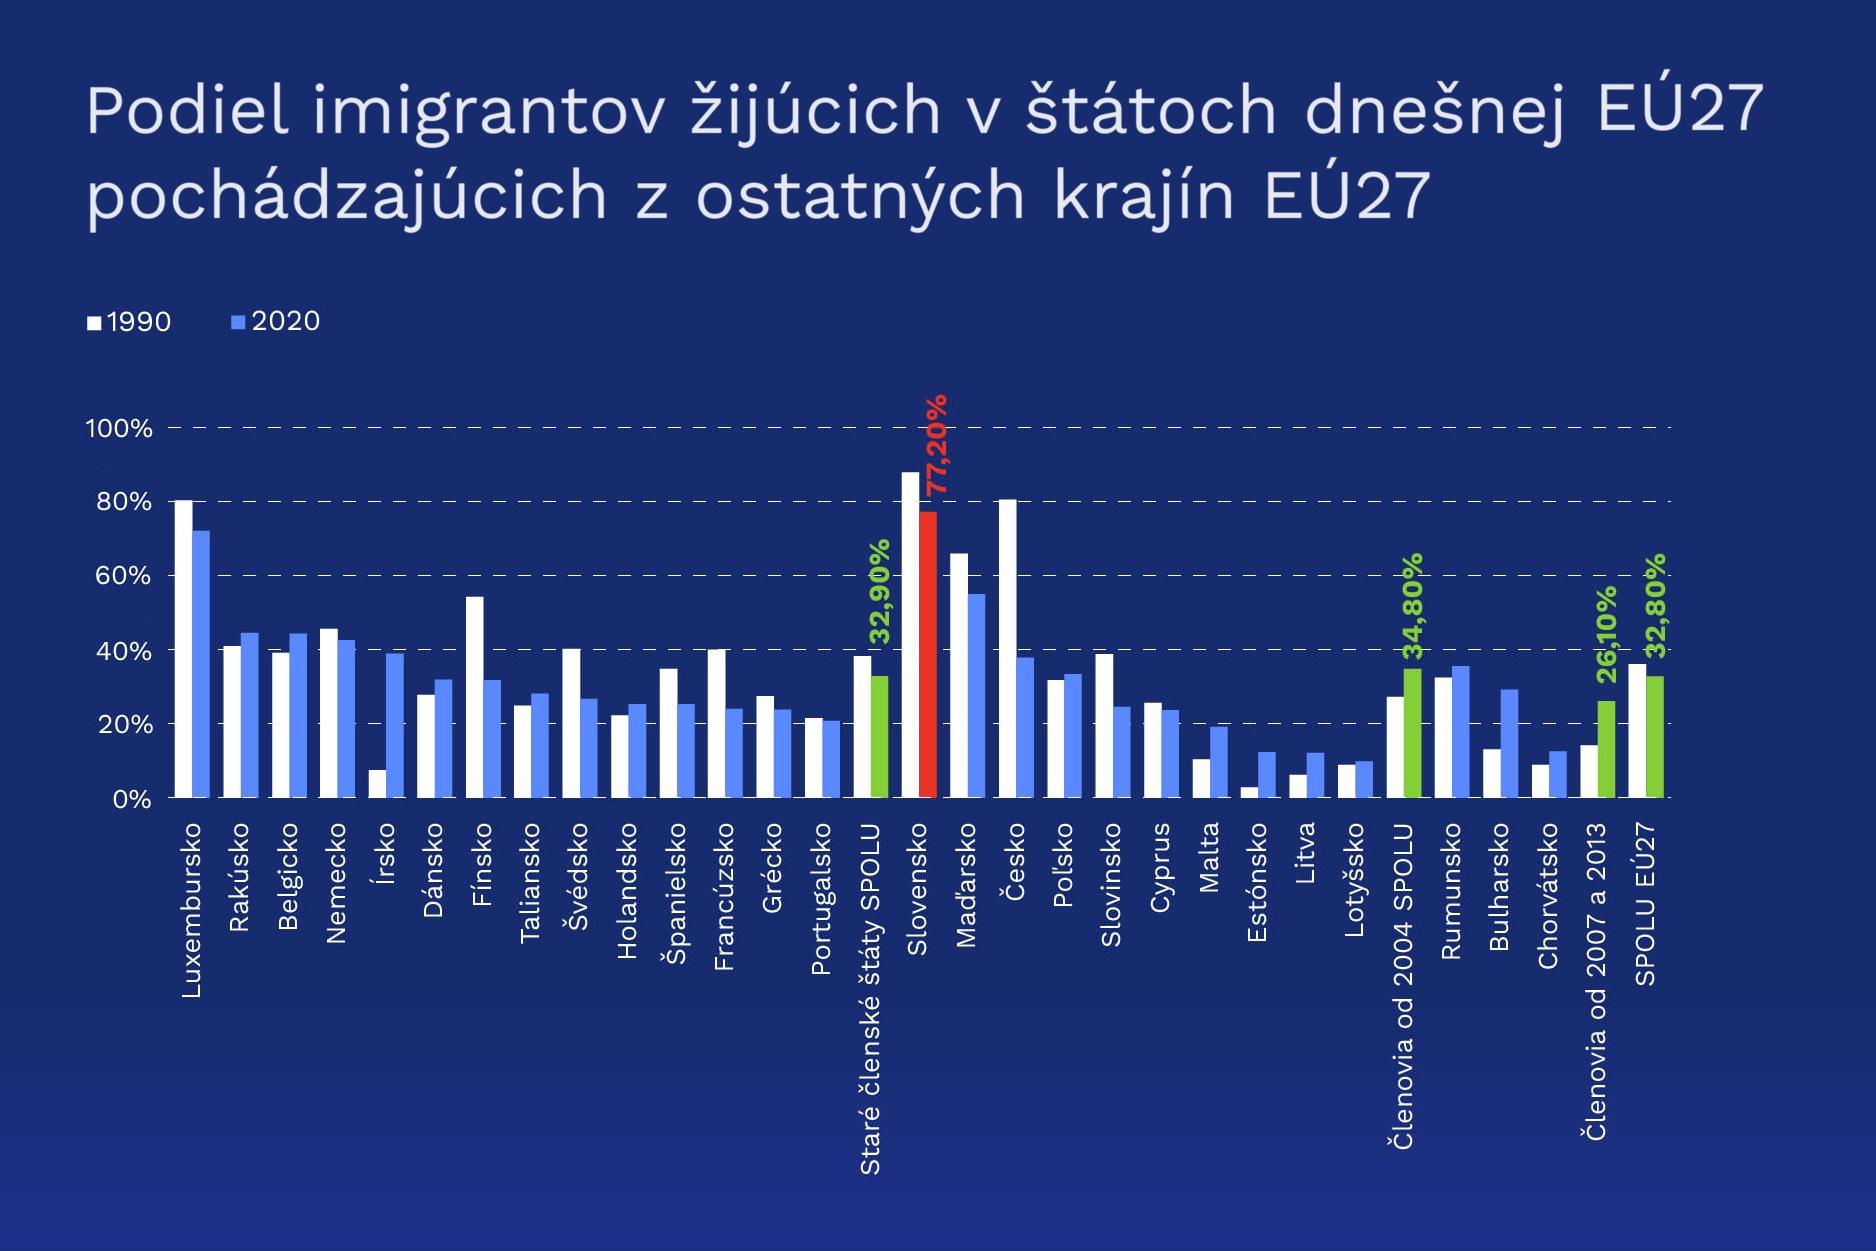 Slovensko je otvorené najmä cudzincom zvnútra EÚ, podiel migrantov z tretích štátov je u nás najnižší v EÚ